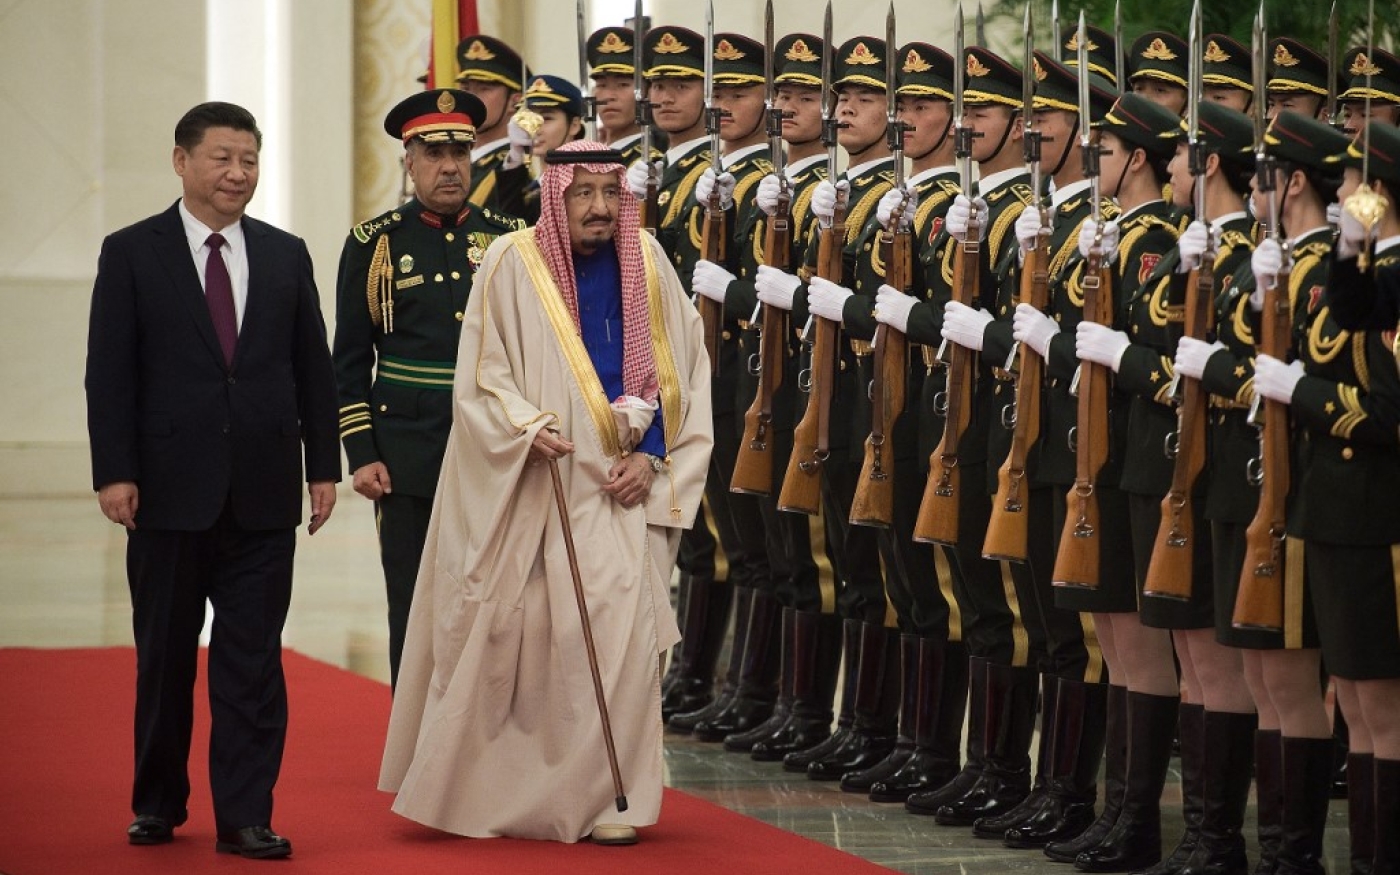 Le roi d’Arabie saoudite Salmane ben Abdelaziz al-Saoud passe en revue une garde d’honneur en compagnie du président chinois Xi Jinping au palais de l’Assemblée du peuple à Beijing, le 16 mars 2017 (AFP)